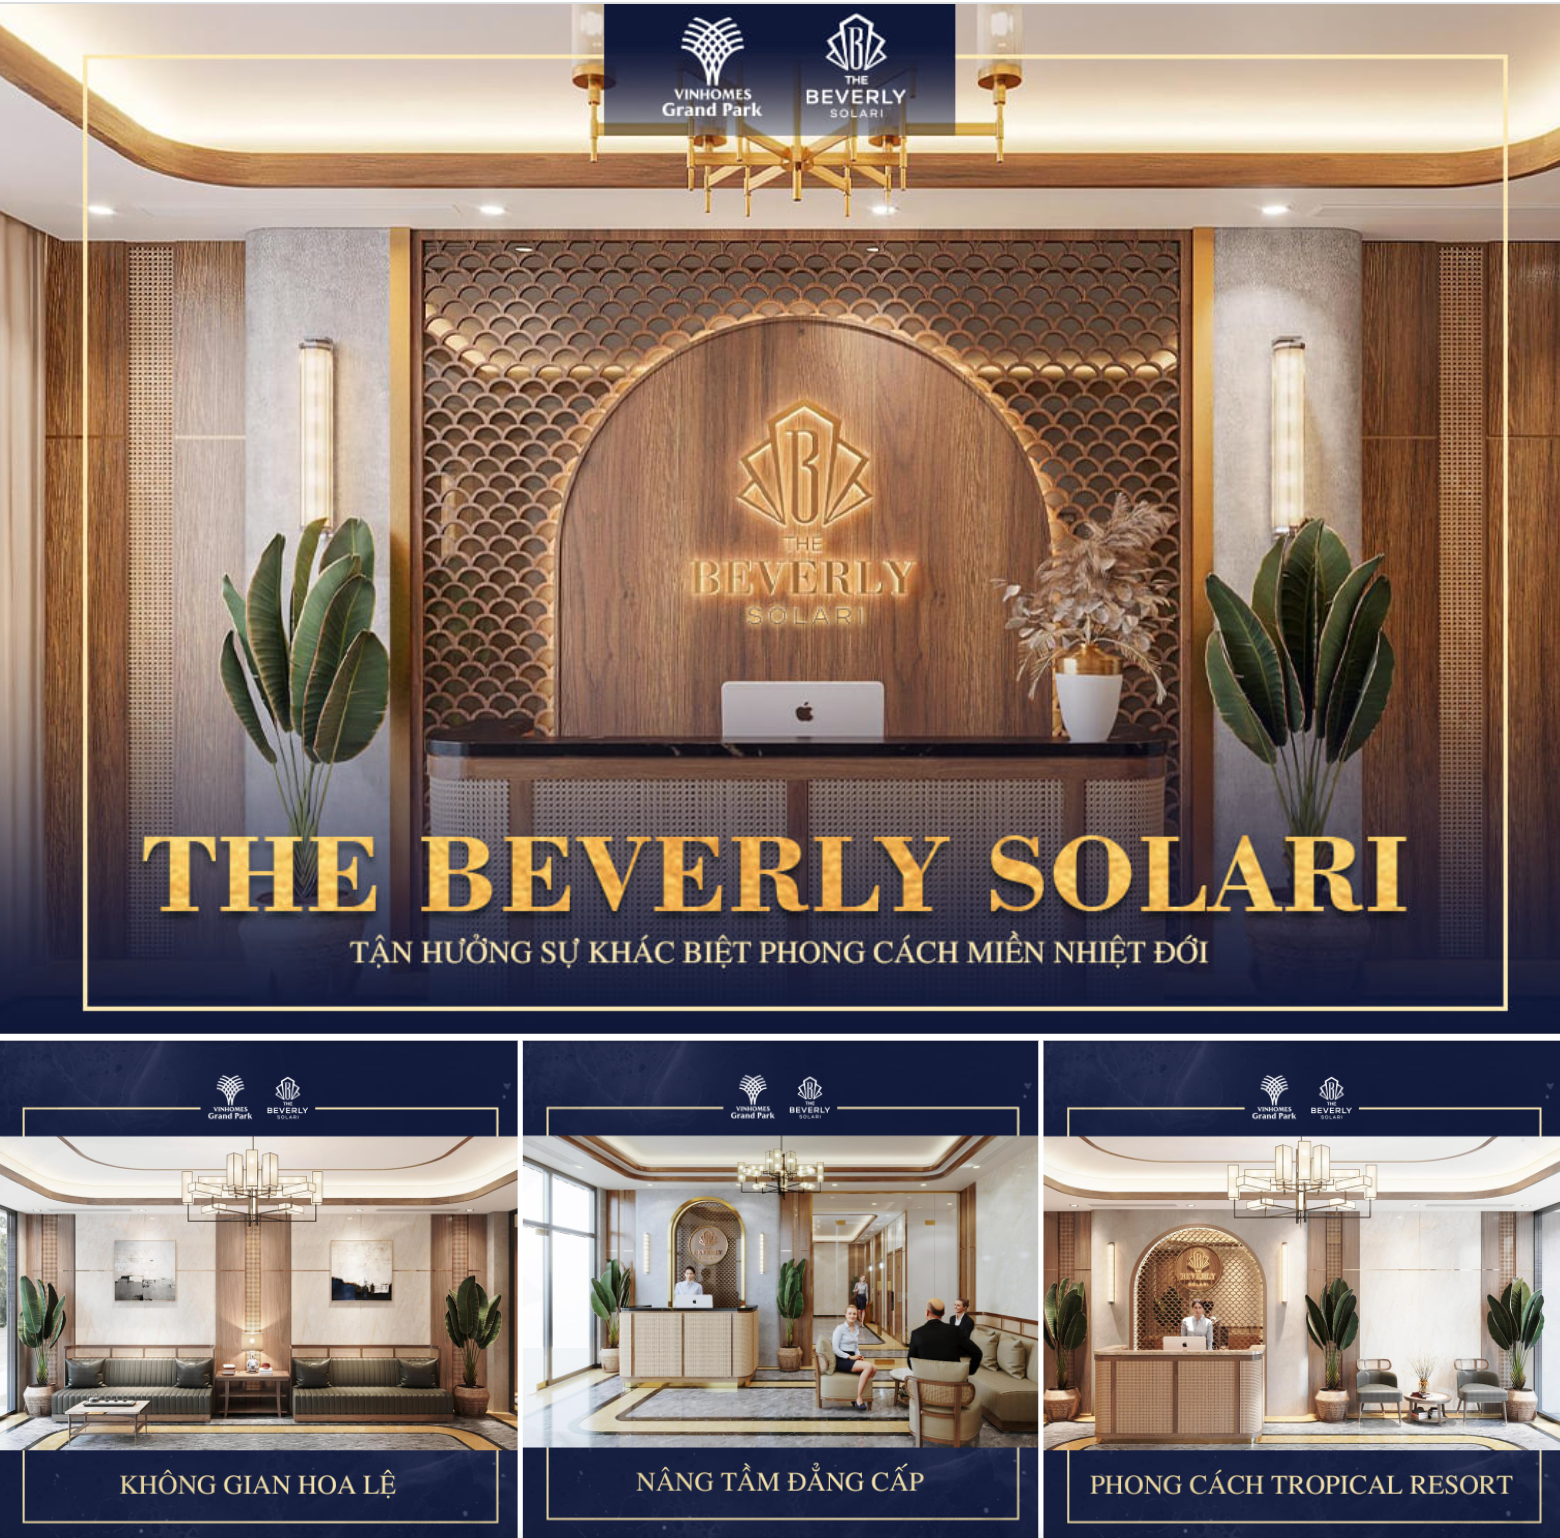 Giá bán căn hộ The Beverly Solari: Studio, 1PN - 3PN là bao nhiêu?